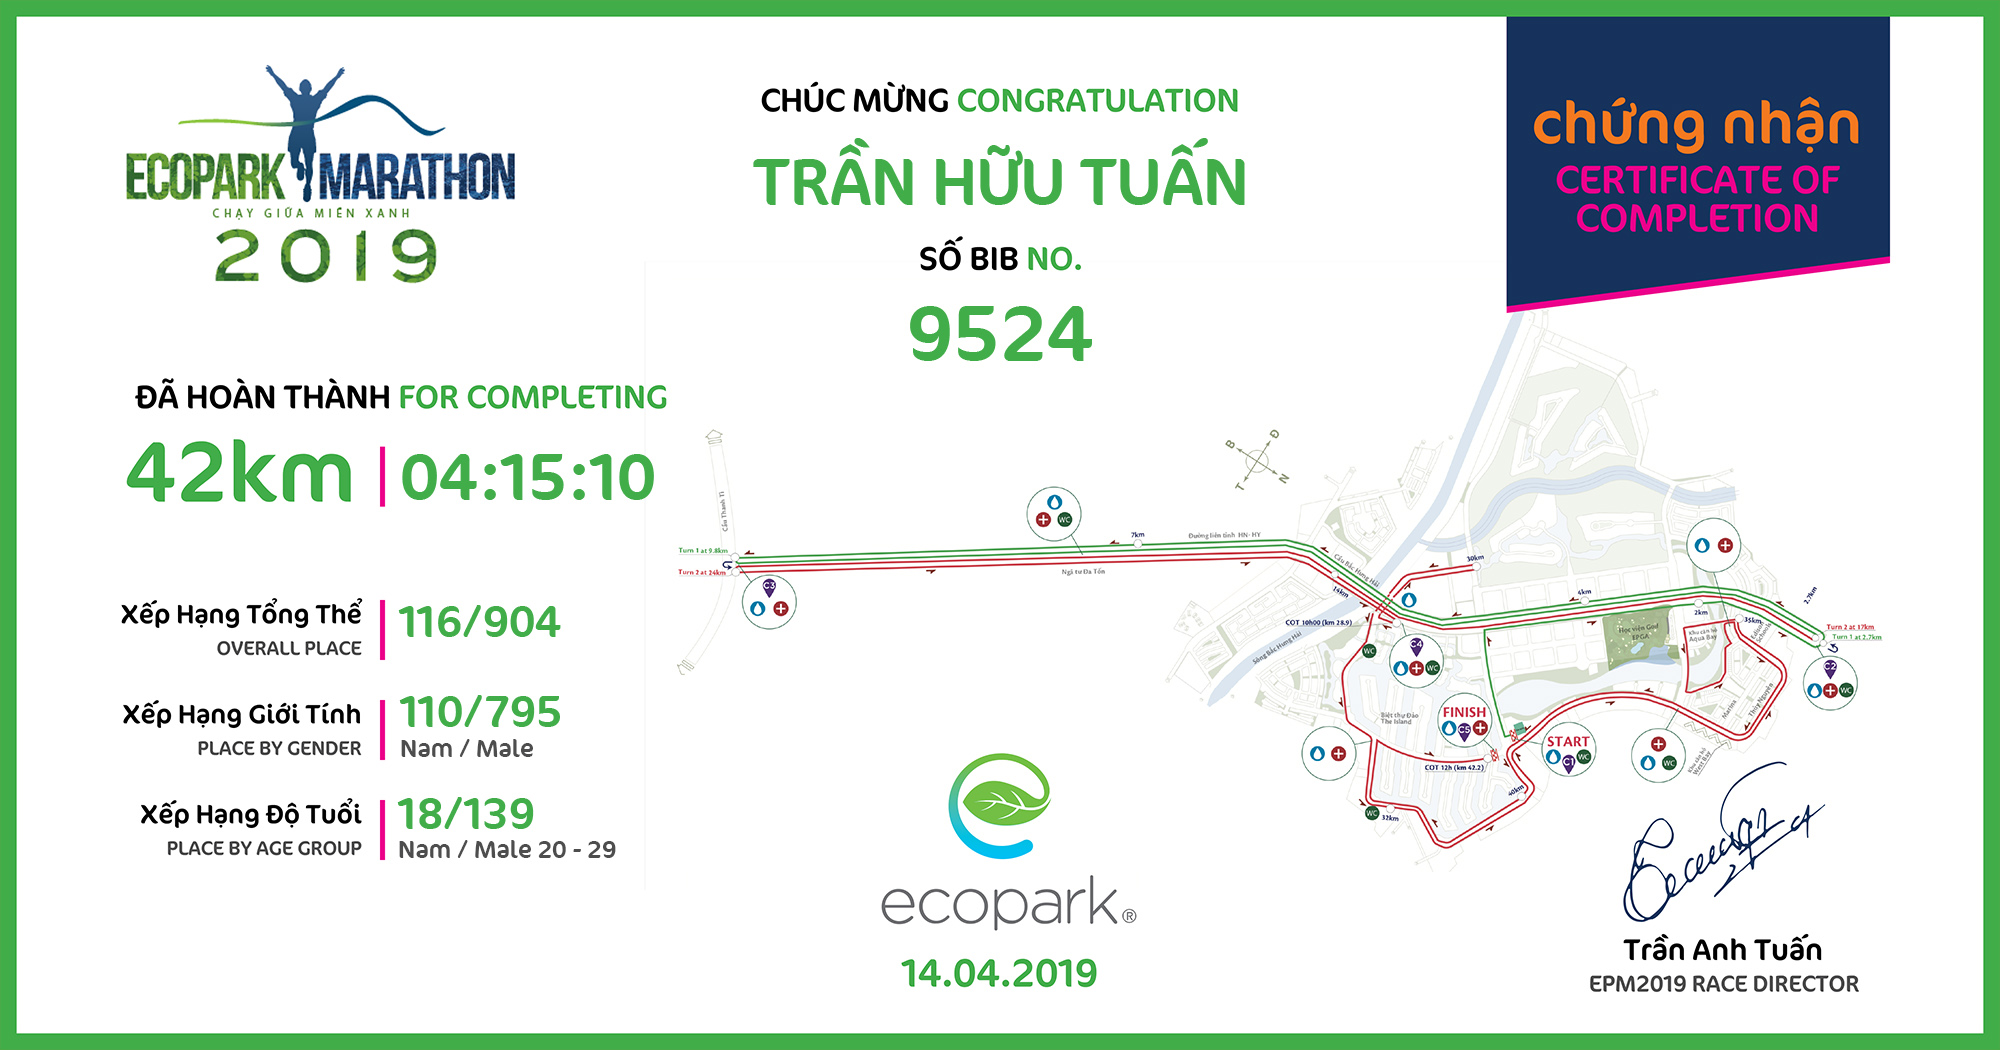 9524 - Trần Hữu Tuấn